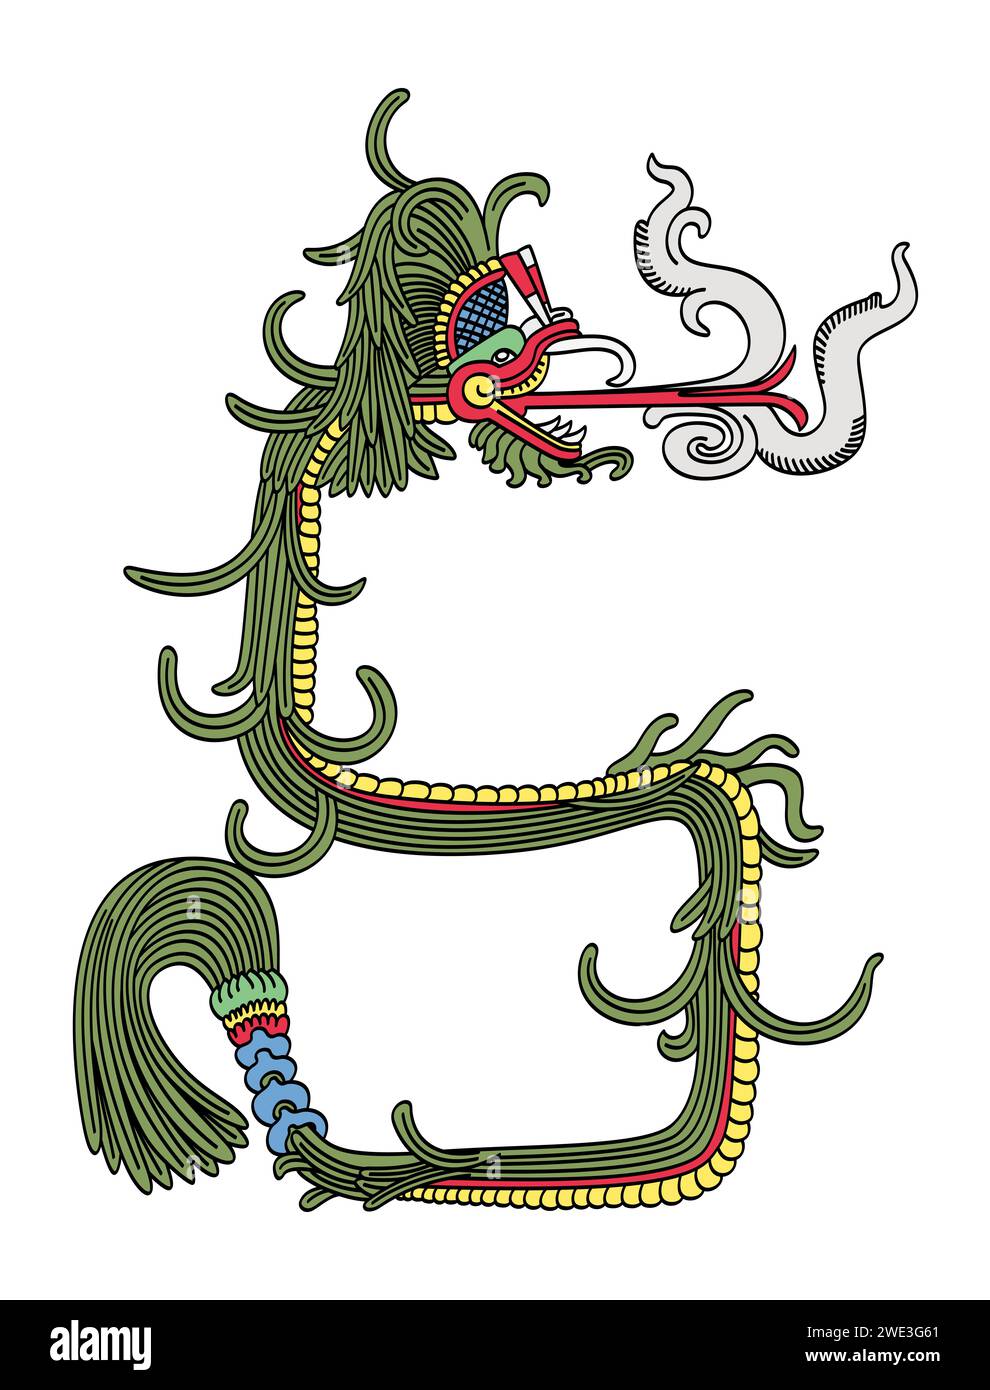 Serpent à plumes, une entité surnaturelle dans les religions mésoaméricaines. Quetzalcoatl d'Aztèques, Kukulkan de Yucatec Maya et Tohil de Kiche Maya. Banque D'Images